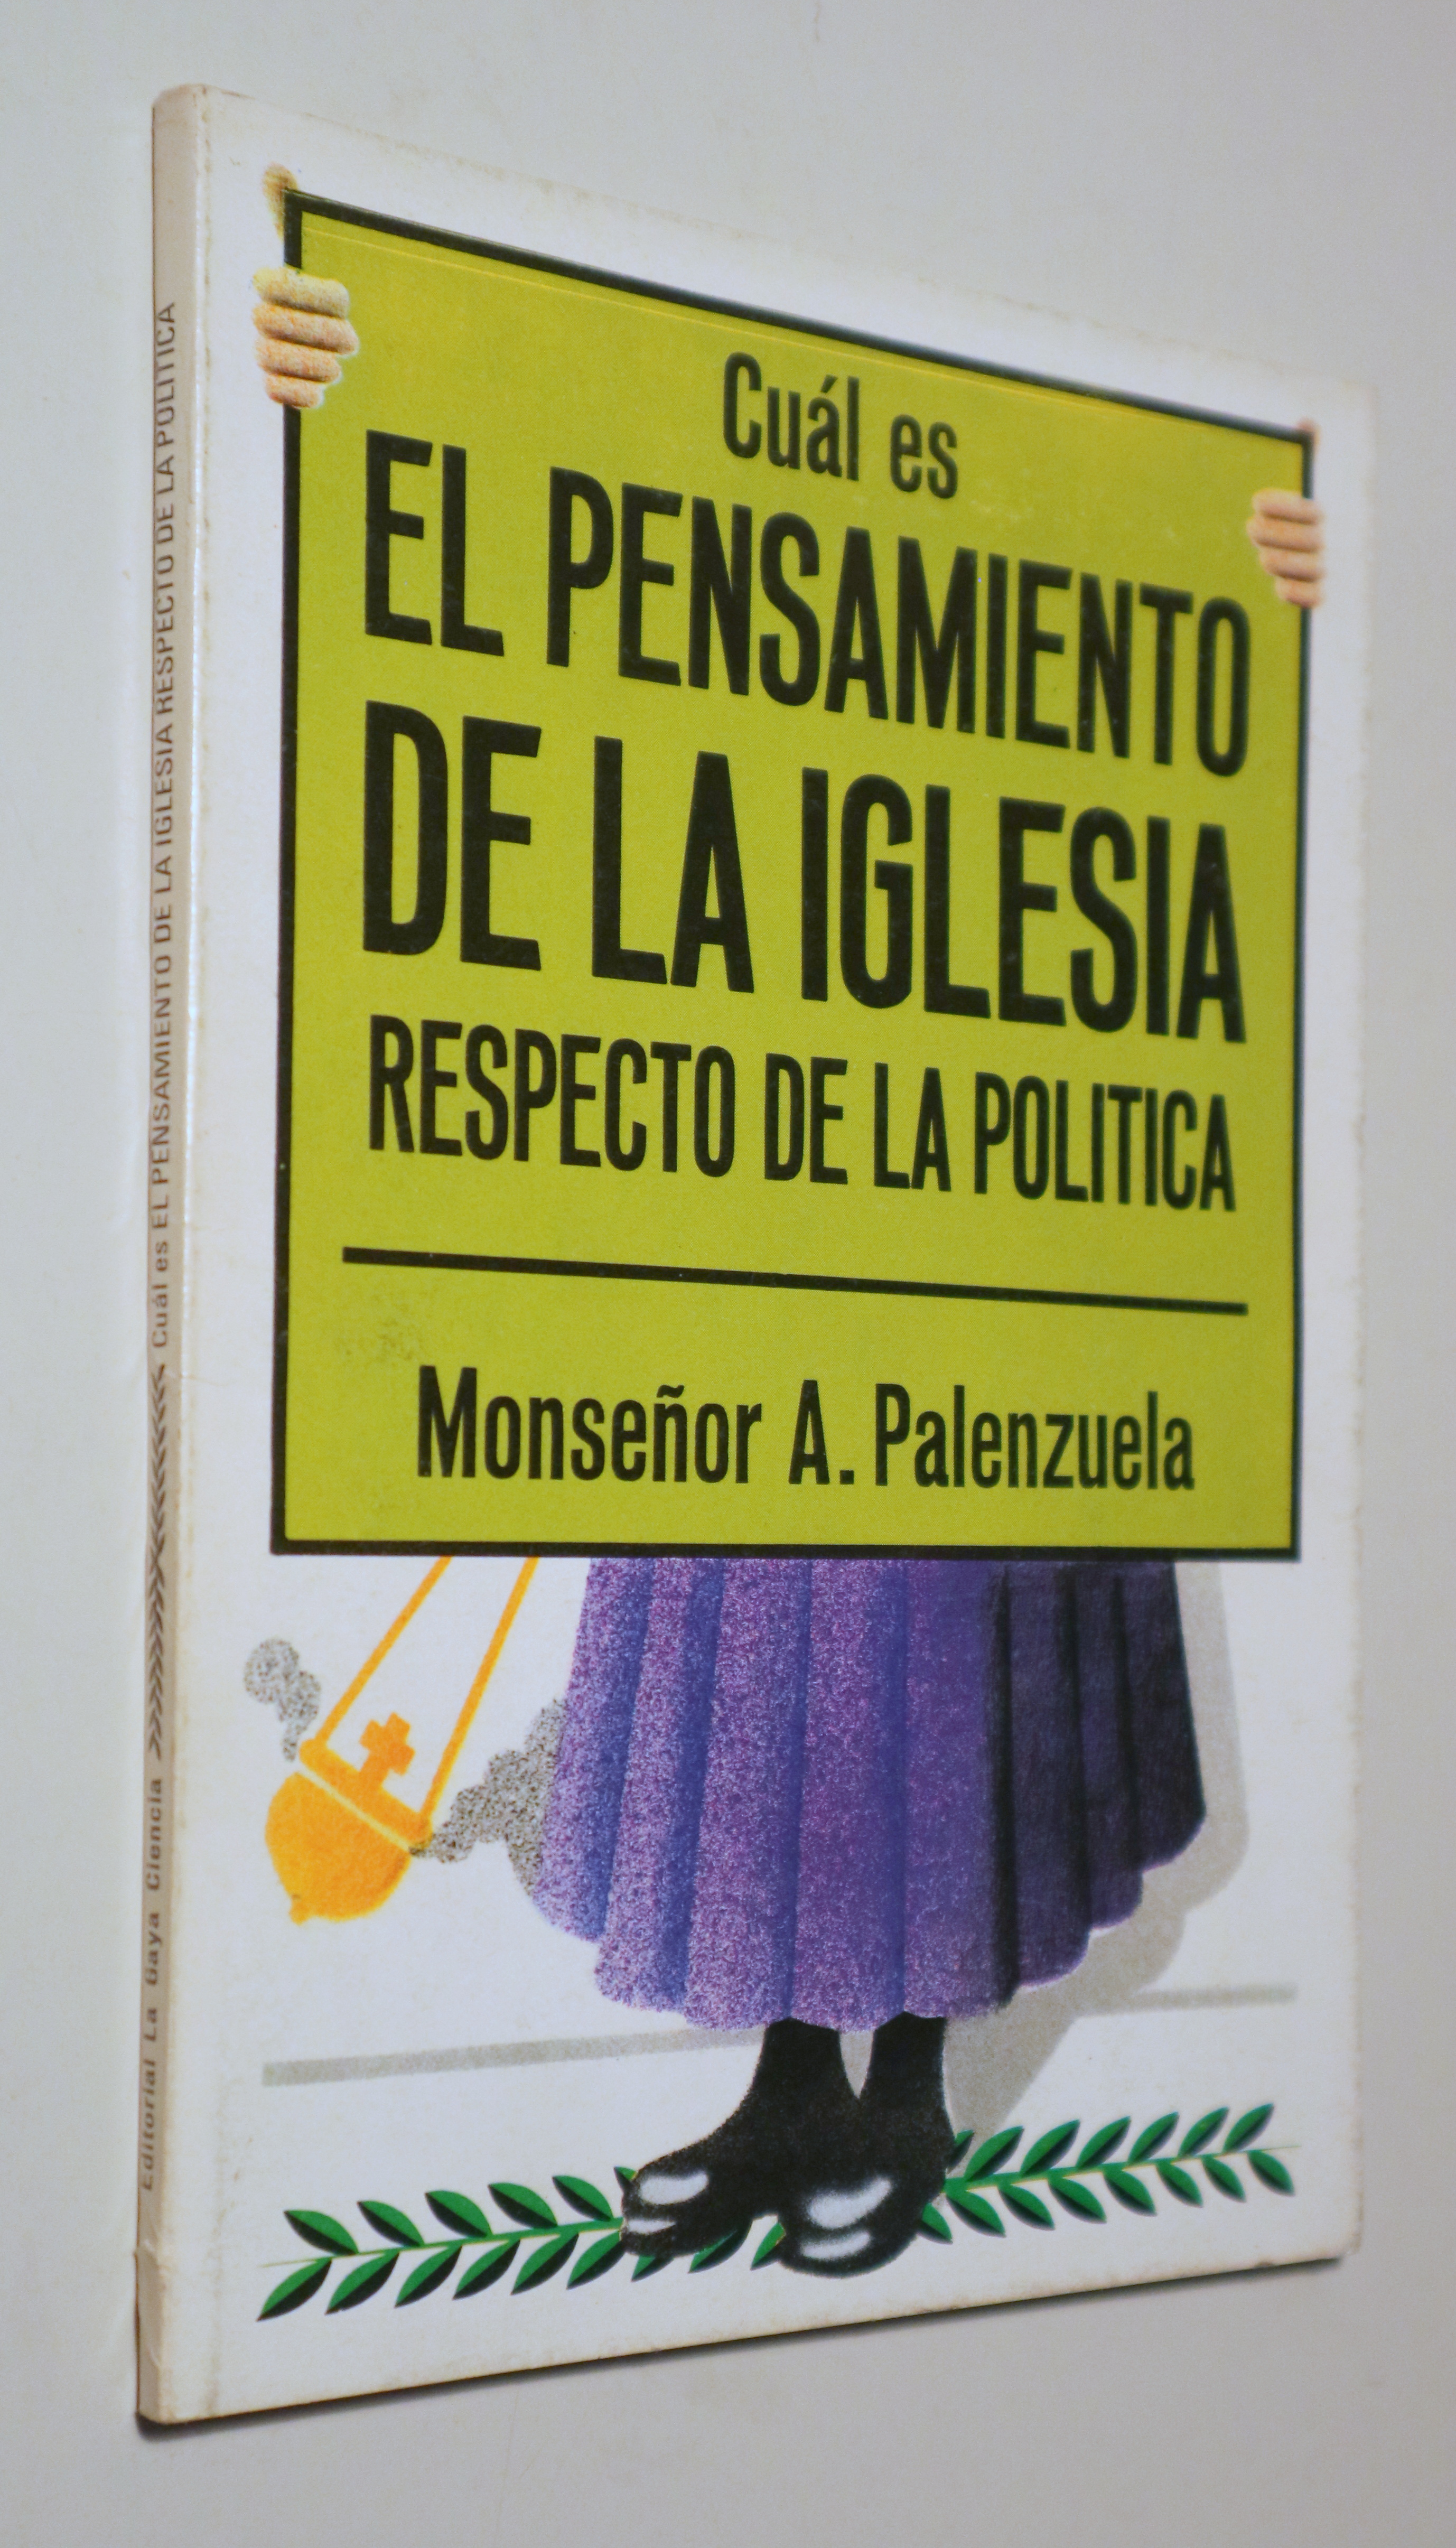 CUÁL ES EL PENSAMIENTO DE LA IGLESIA RESPECTO DE LA POLÍTICA - Barcelona 1976 - Ilustrado